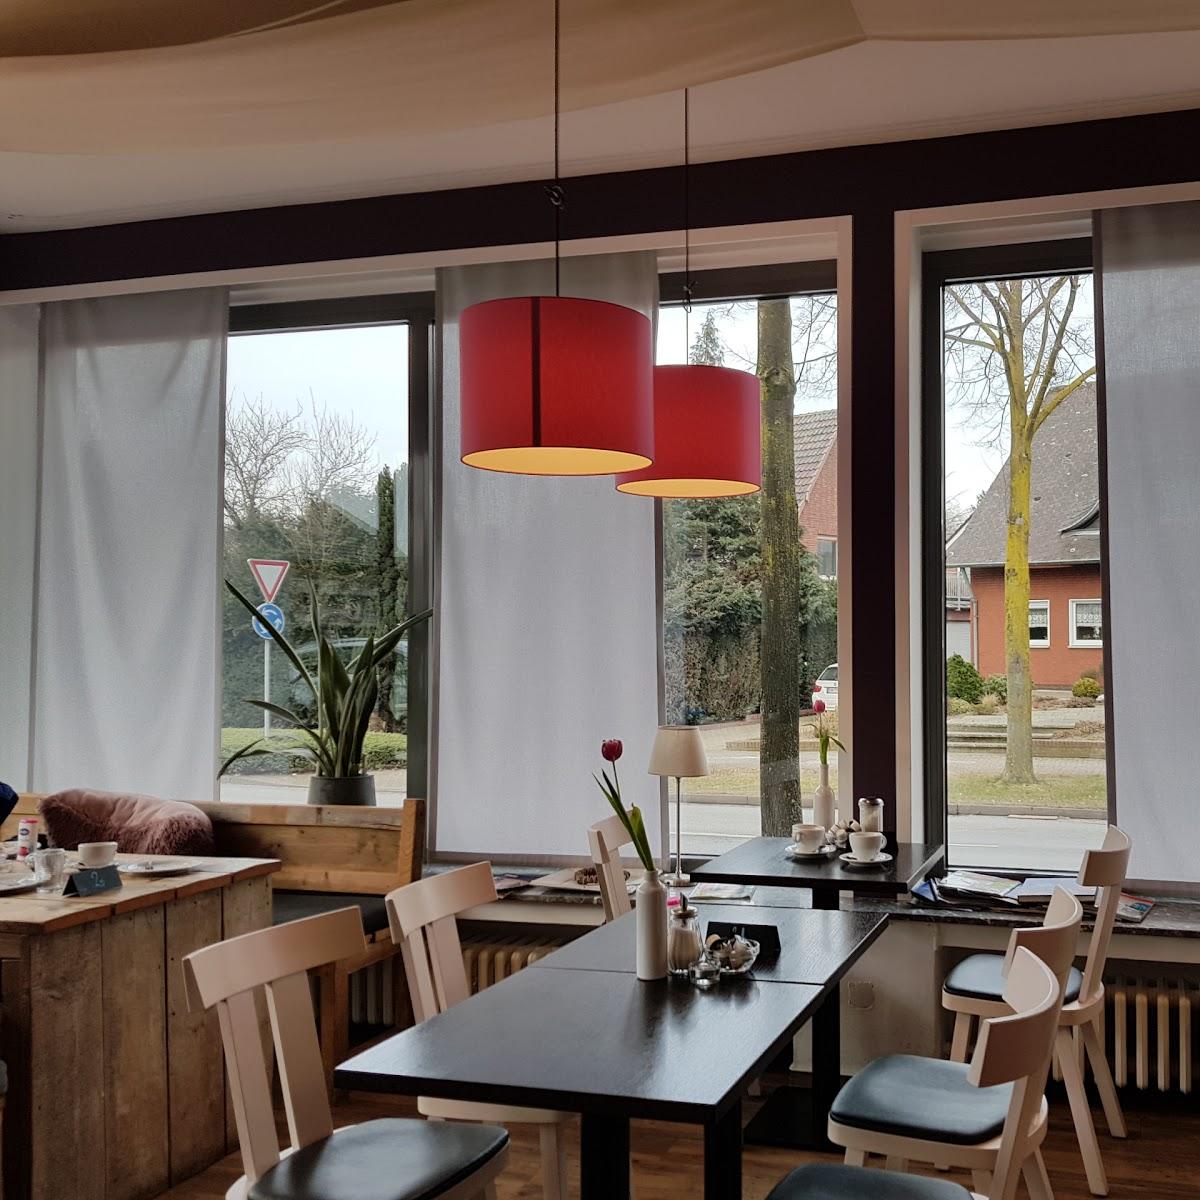 Restaurant "Cafe Winkelmann" in Hamminkeln